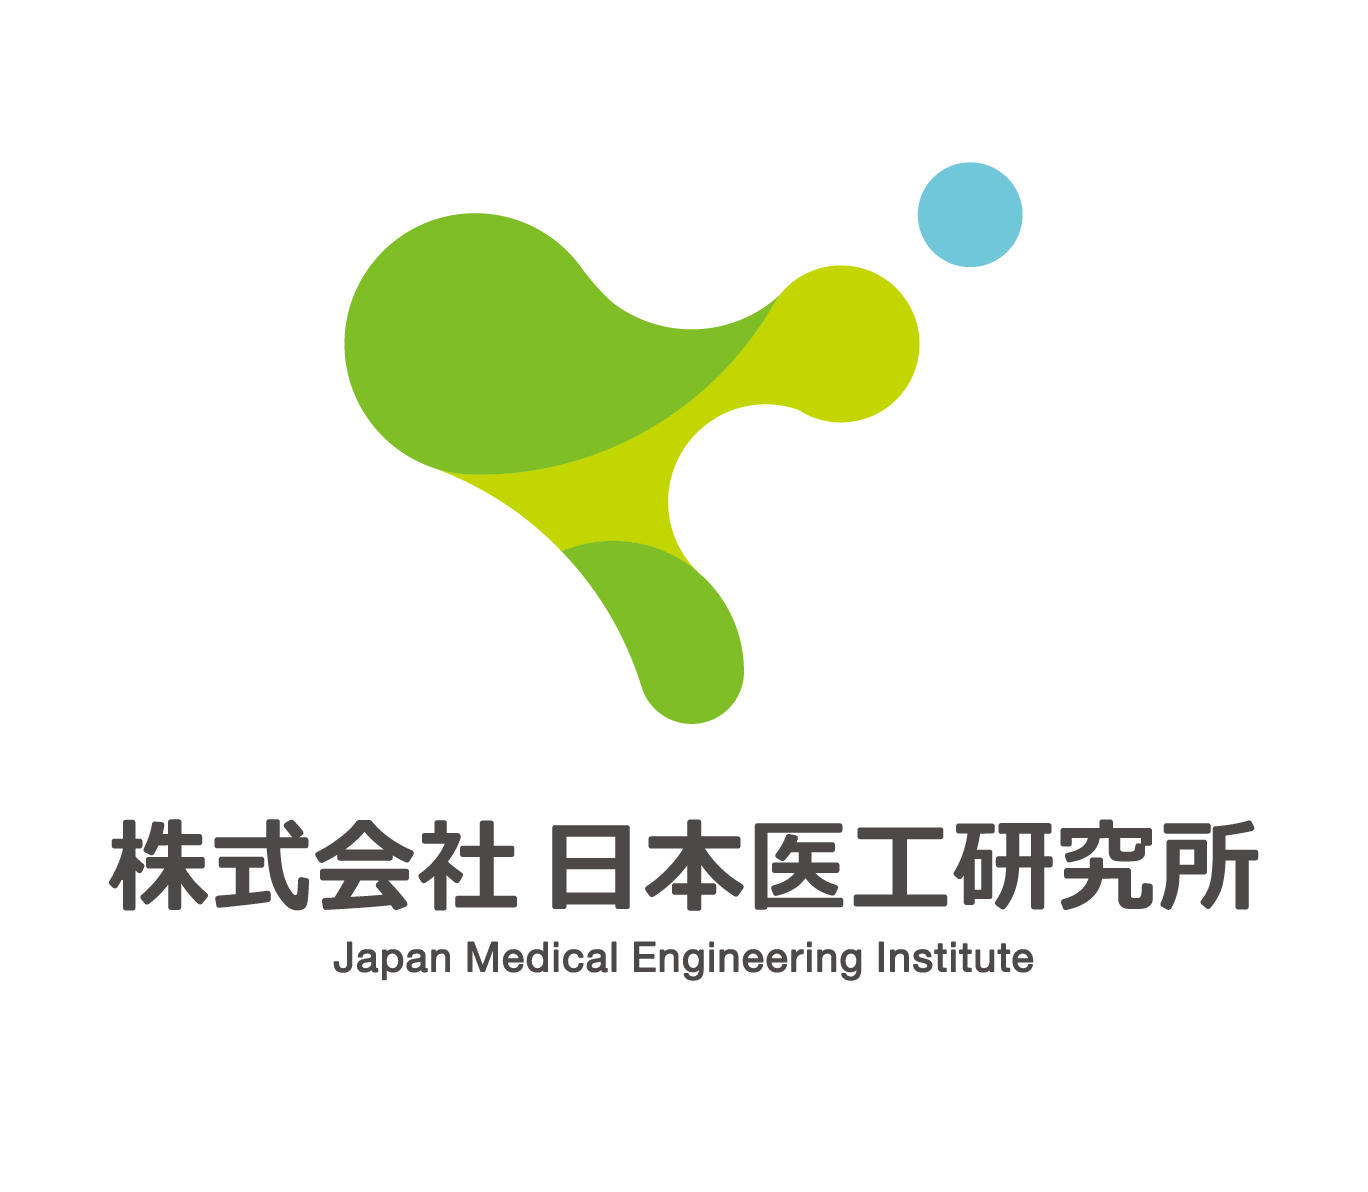 Japan Medical Engineering Institute